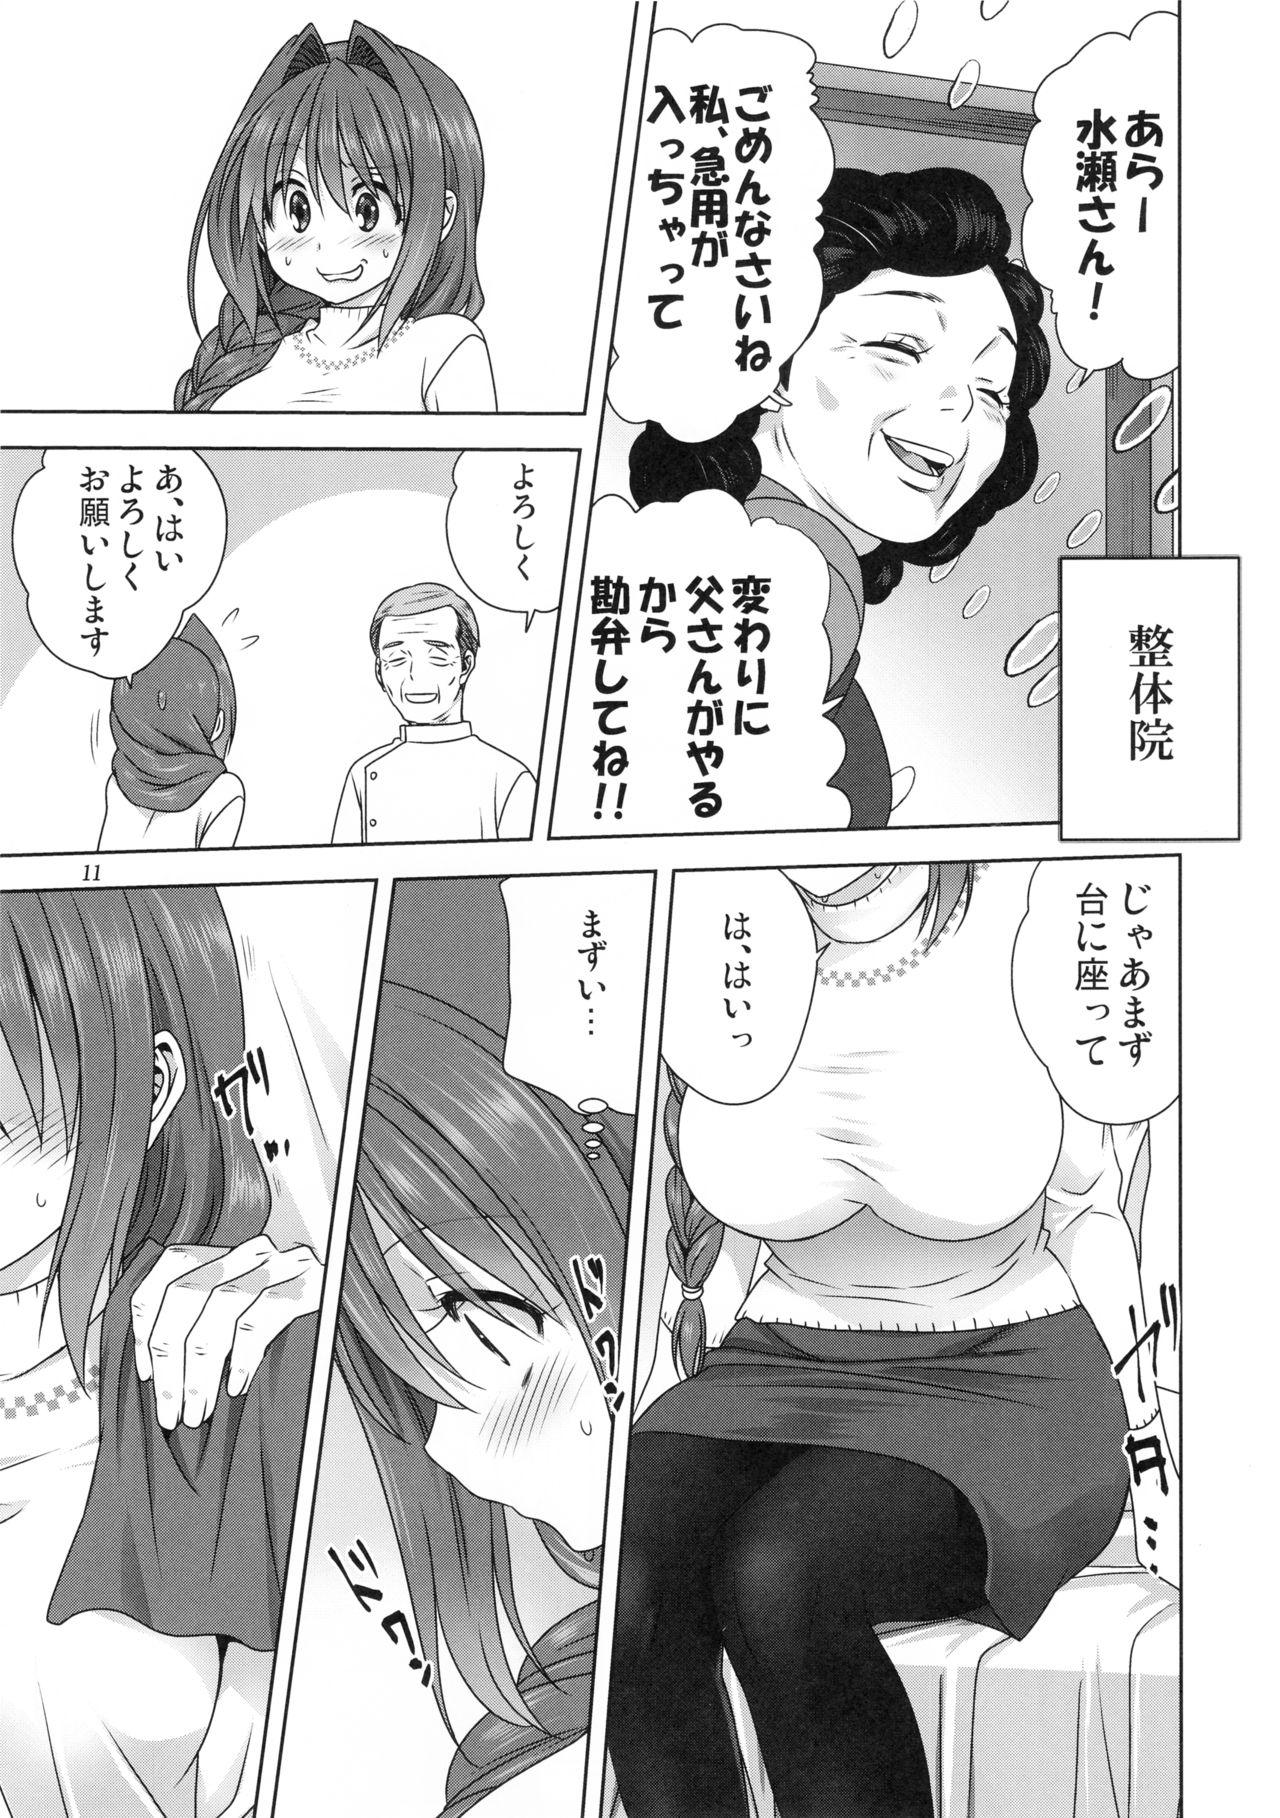 De Quatro Akiko-san to Issho 23 - Kanon People Having Sex - Page 10